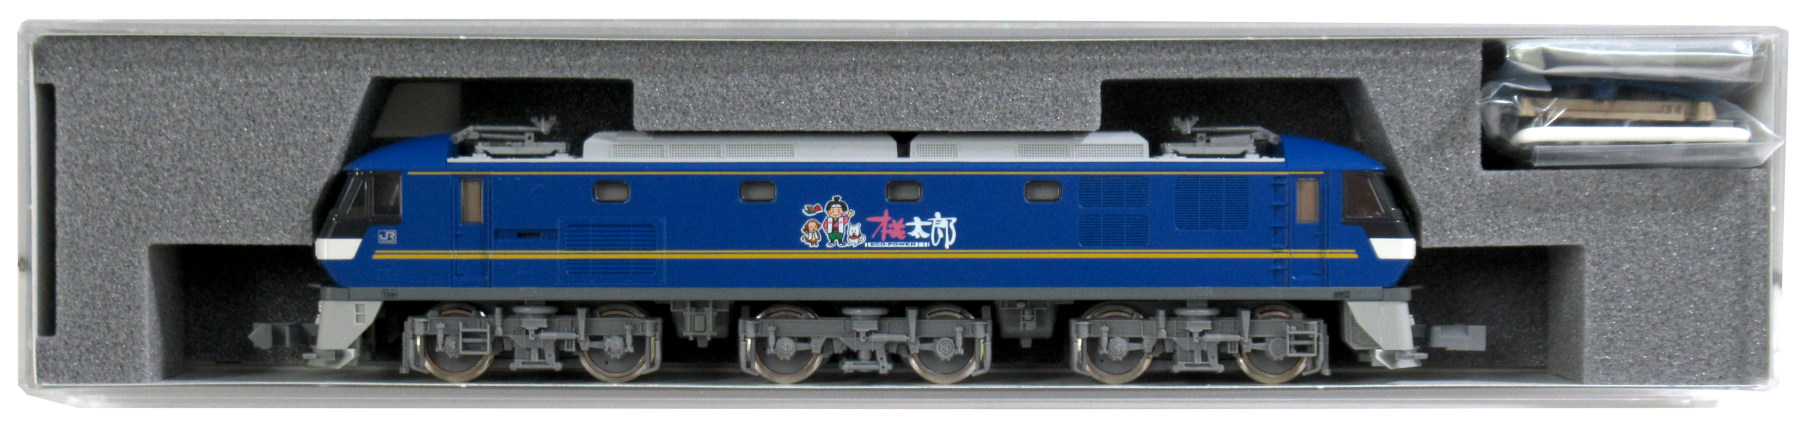 [公式]鉄道模型(JR・国鉄 形式別(N)、電気機関車、EF210)カテゴリ 